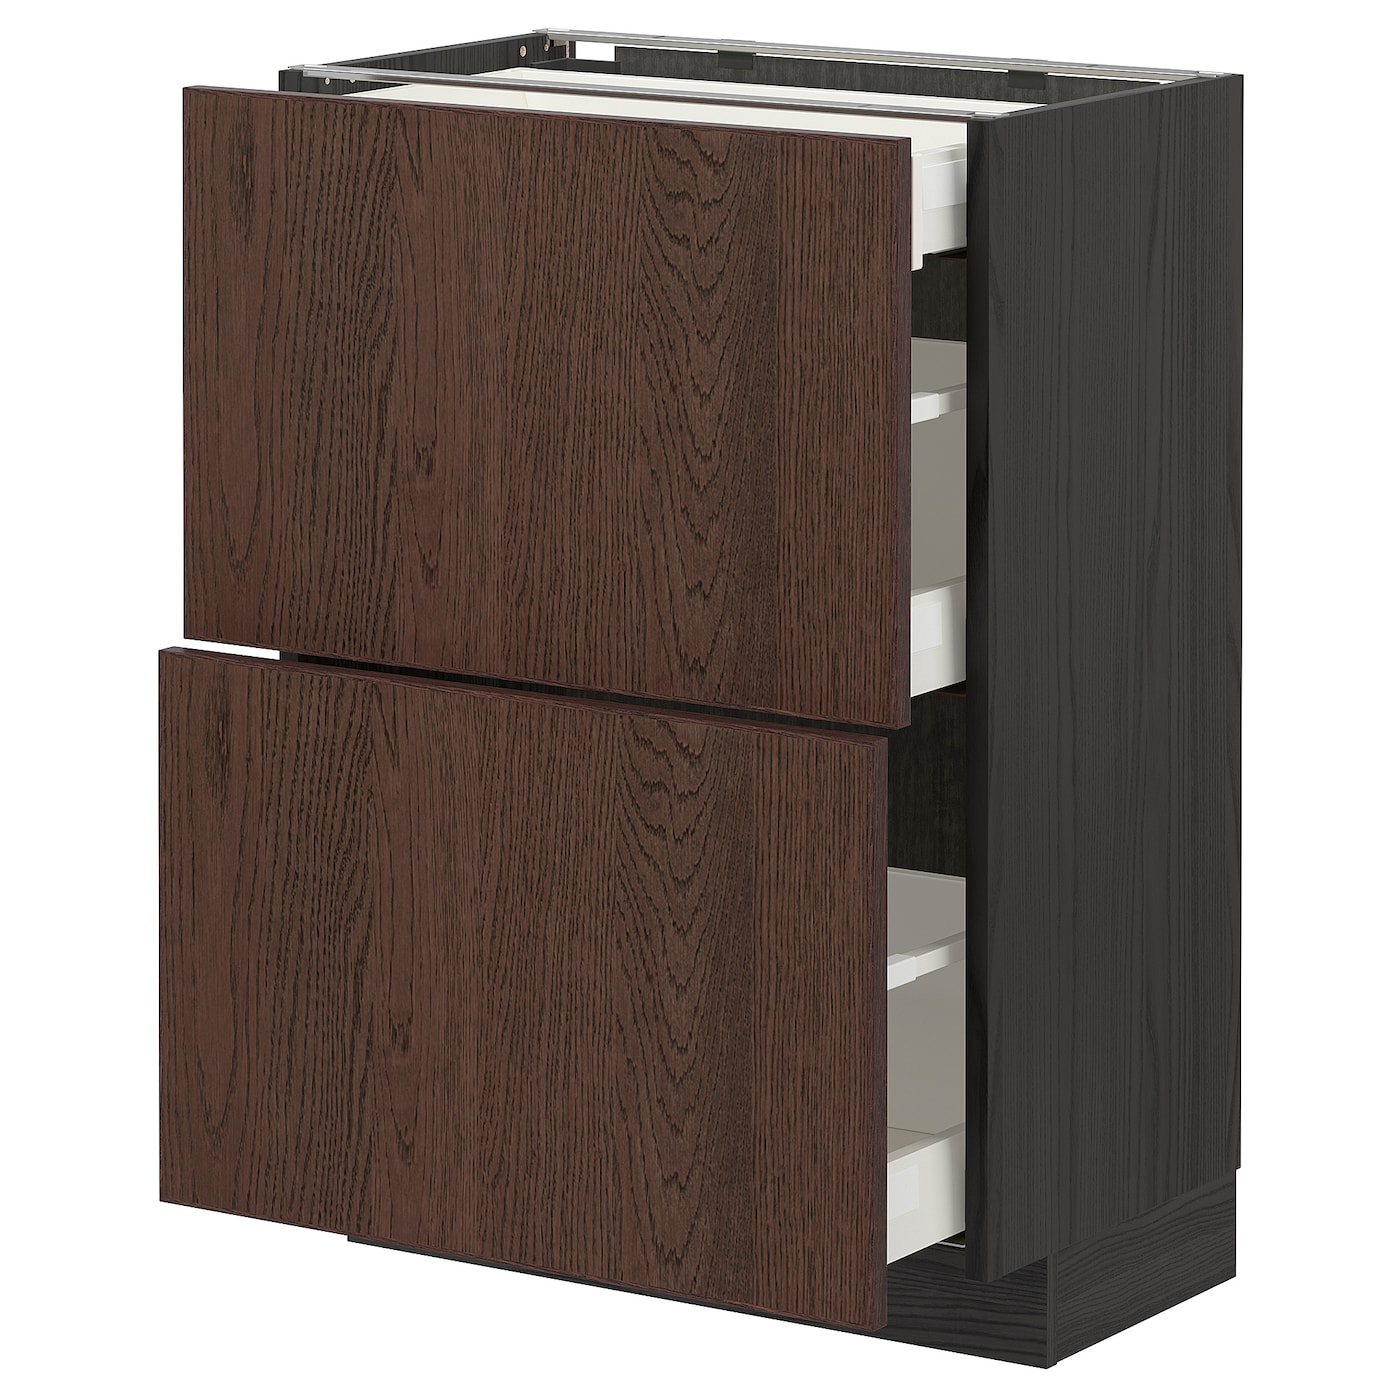 Напольный кухонный шкаф  - IKEA METOD MAXIMERA, 88x39,2x60см, черный/коричневый, МЕТОД МАКСИМЕРА ИКЕА